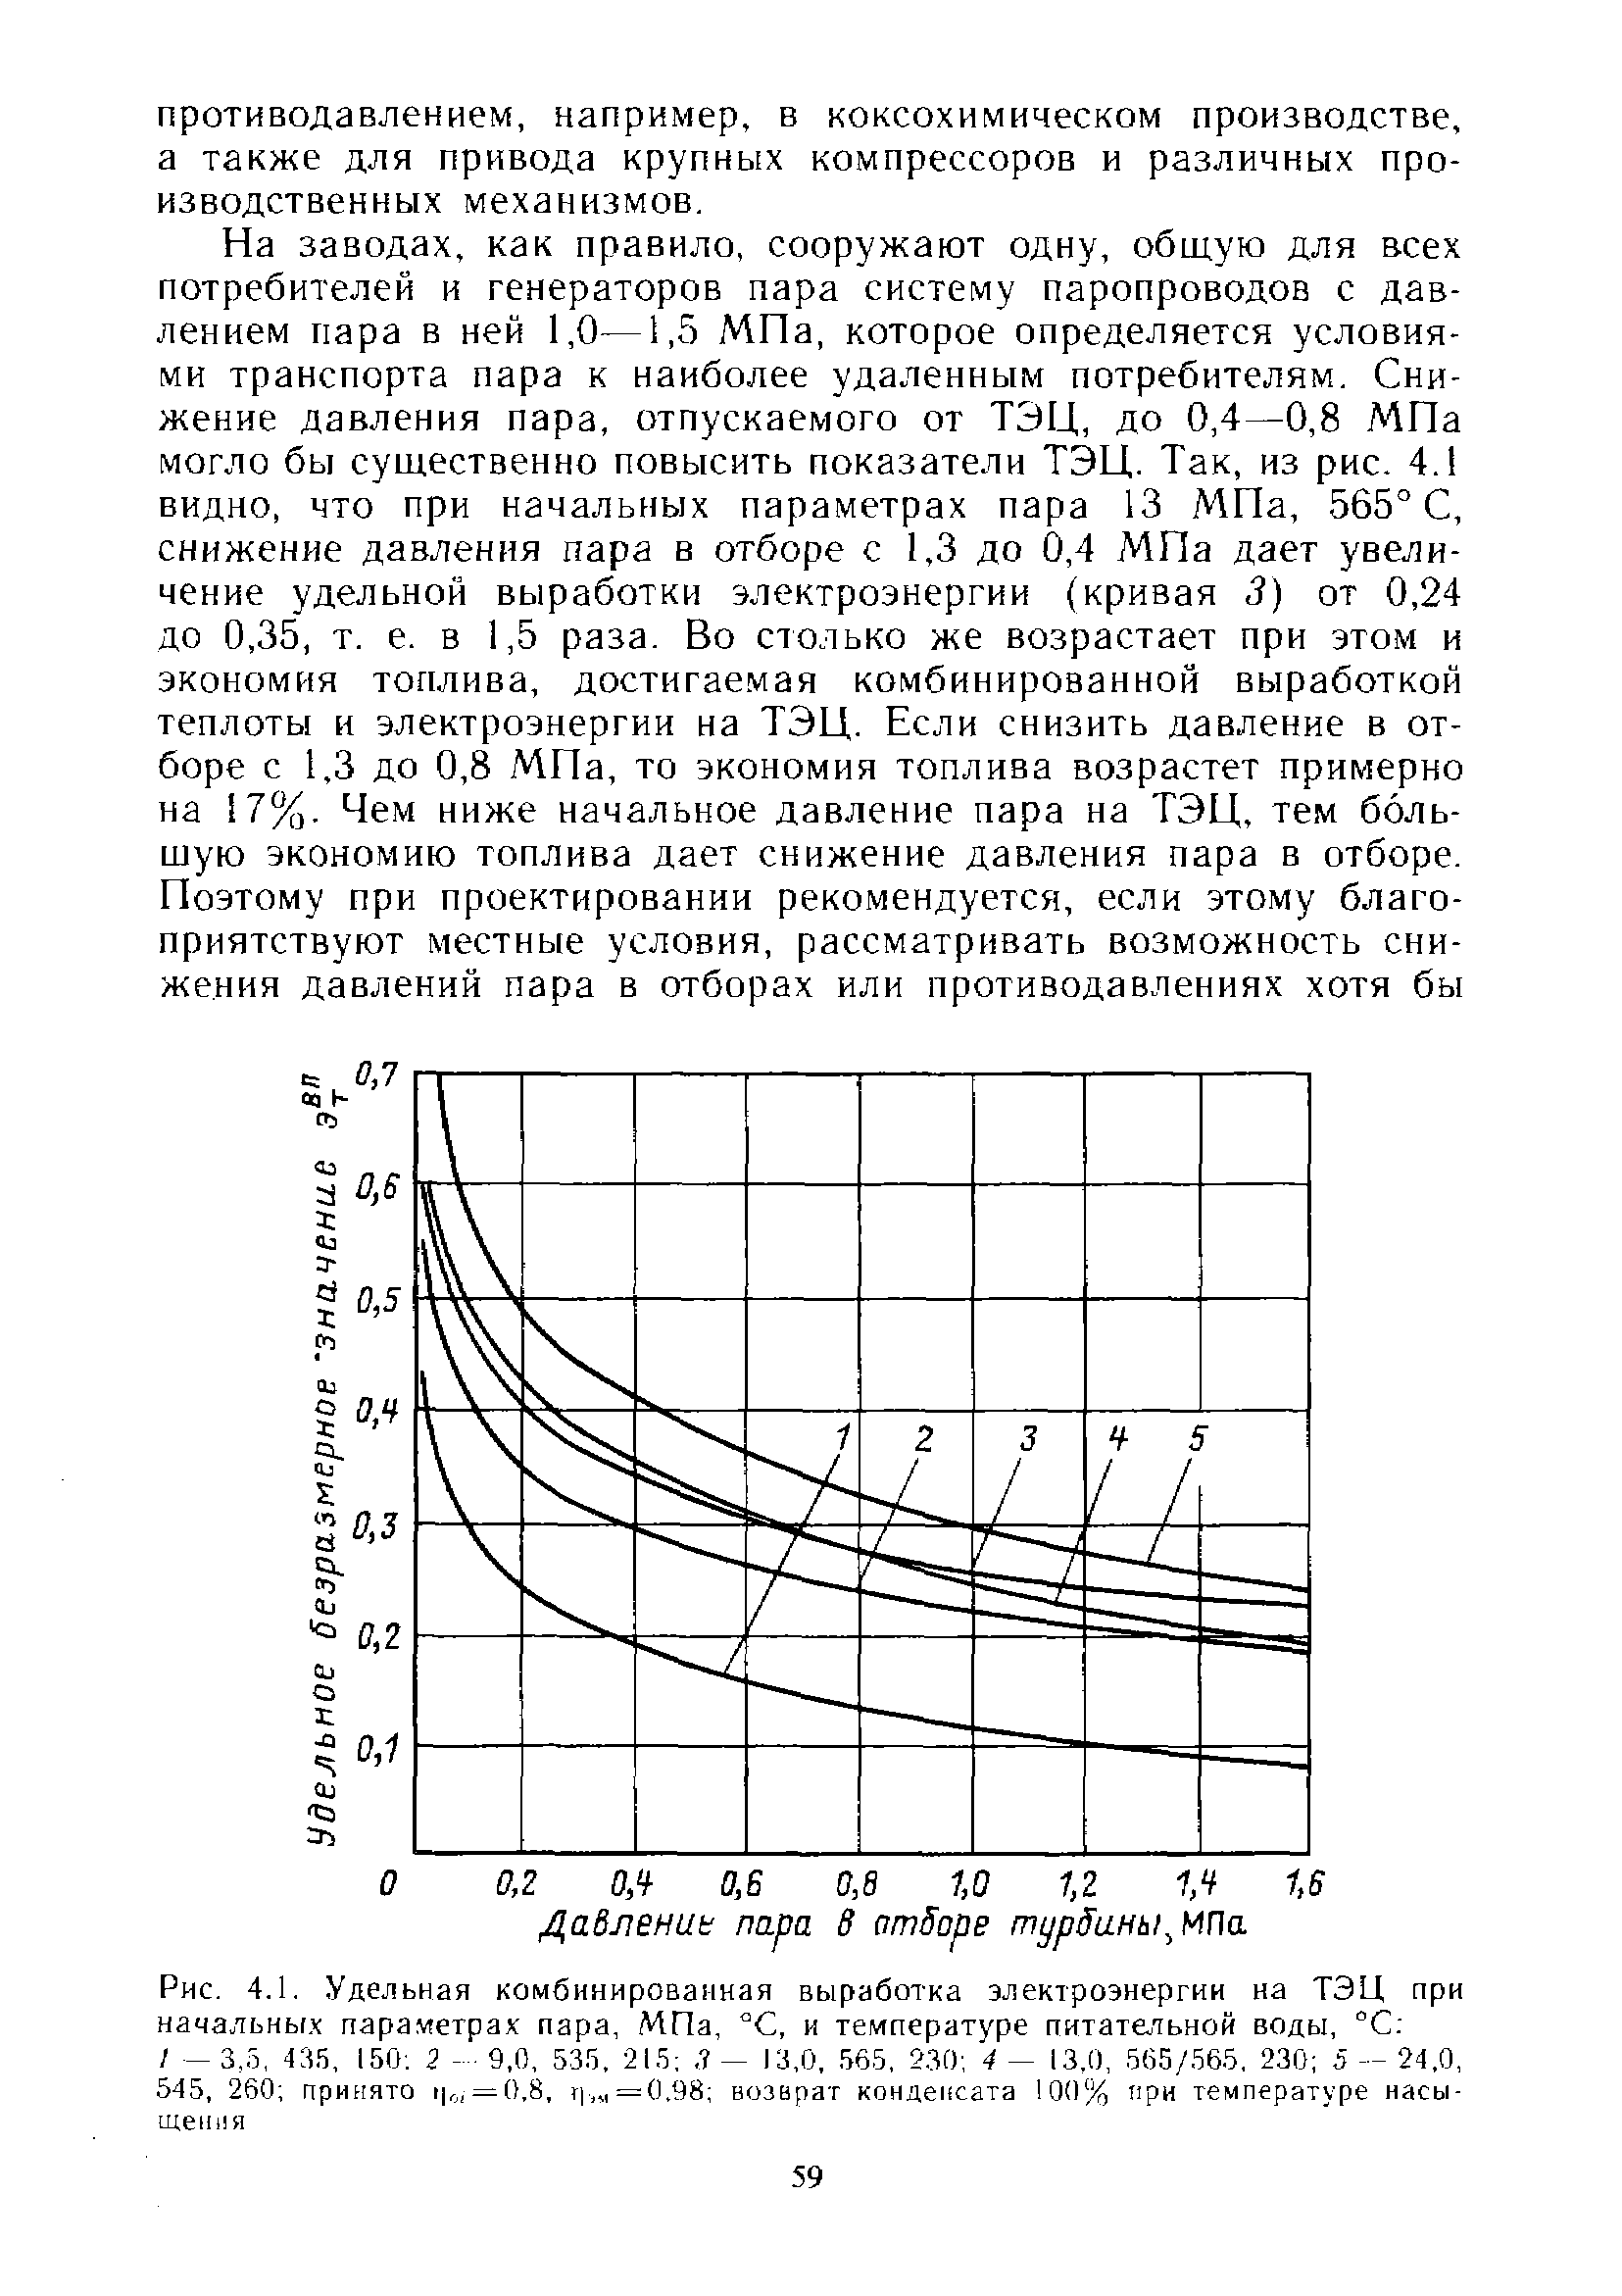 Рис. 4.1. Удельная комбинированная выработка электроэнергии на ТЭЦ при начальны.х <a href="/info/104608">параметрах пара</a>, МПа, С, и температуре питатыьной воды, С 
